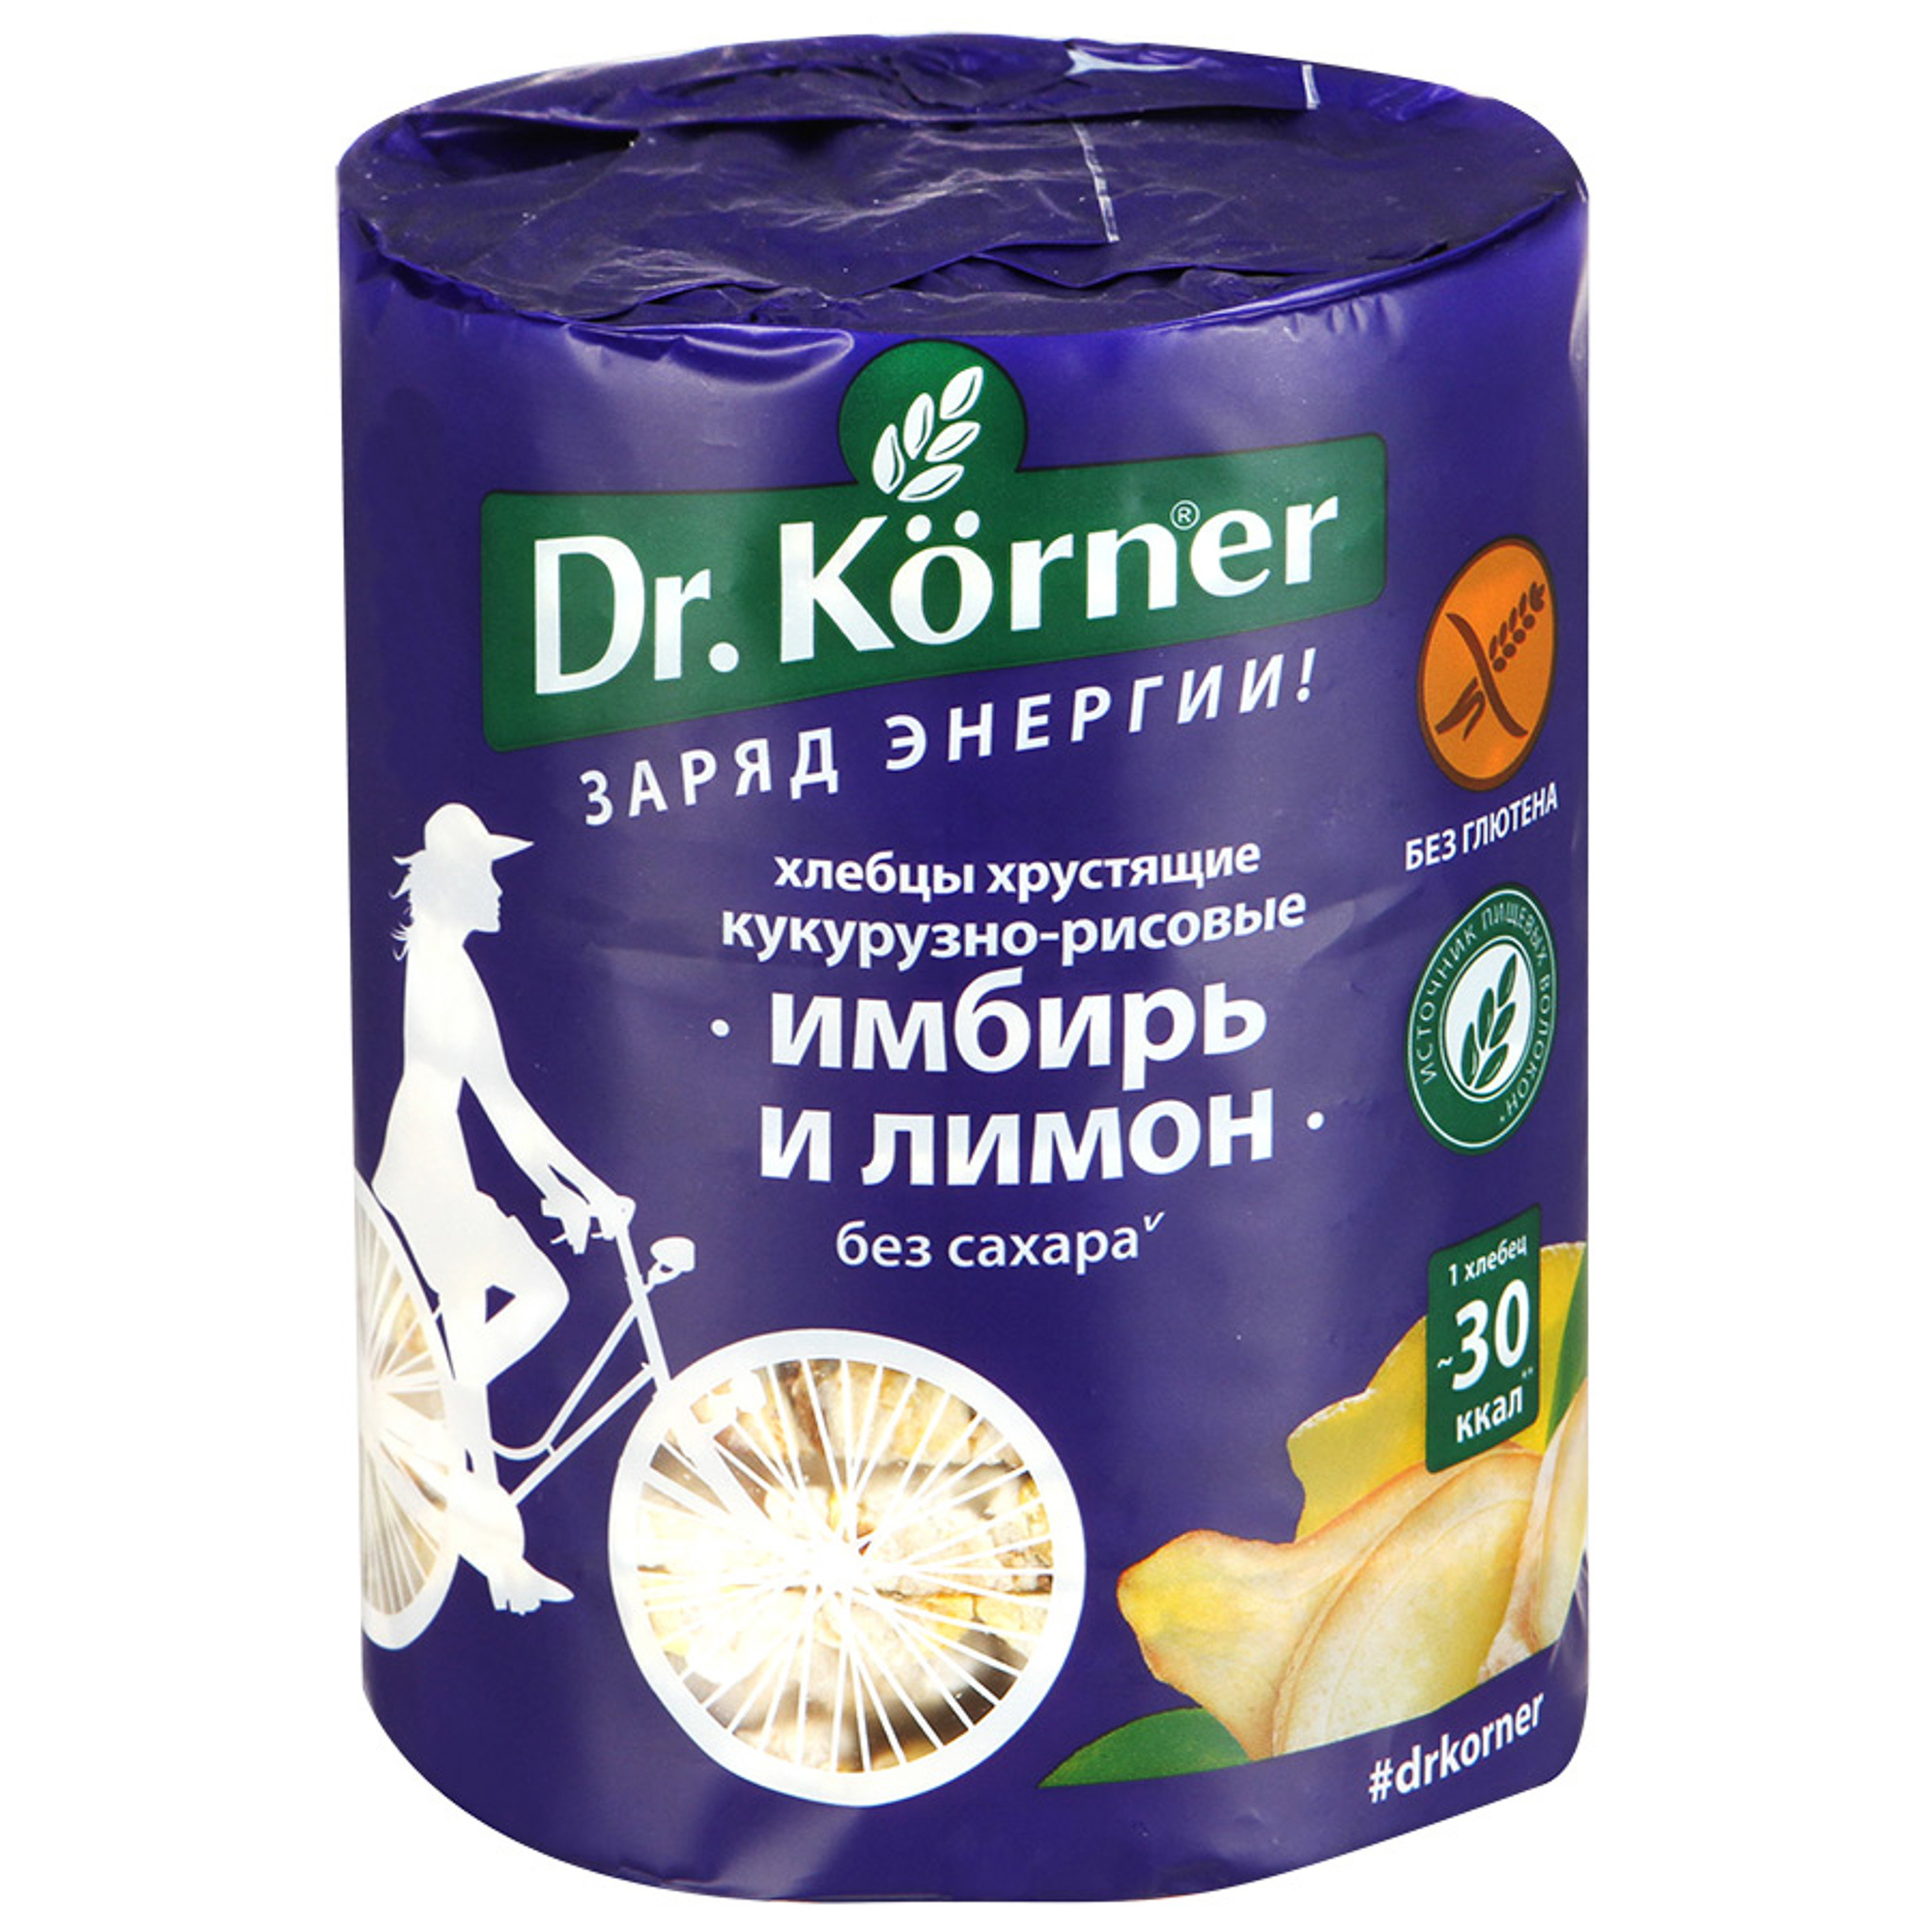 Хлебцы хрустящие Dr. Korner Кукурузно-рисовые с имбирем и лимоном 90 г хлебцы dr korner кукурузно рисовые с прованскими травами 100 г